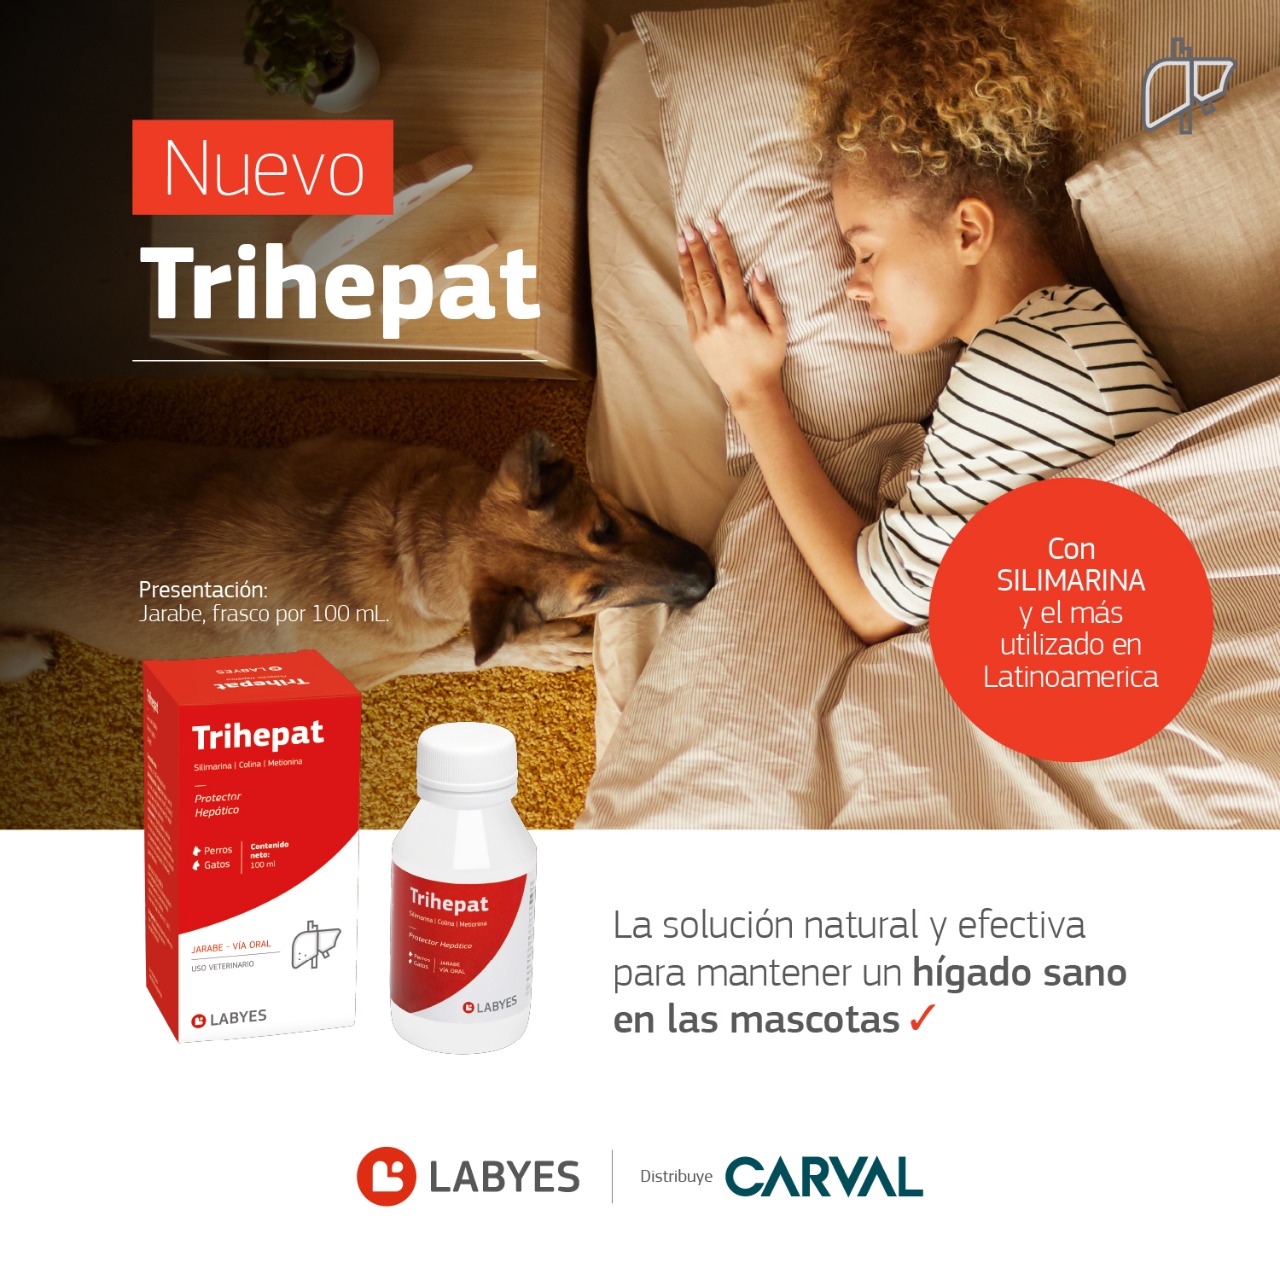  Trihepat de Carval: la solución para el hígado sano de las mascotas